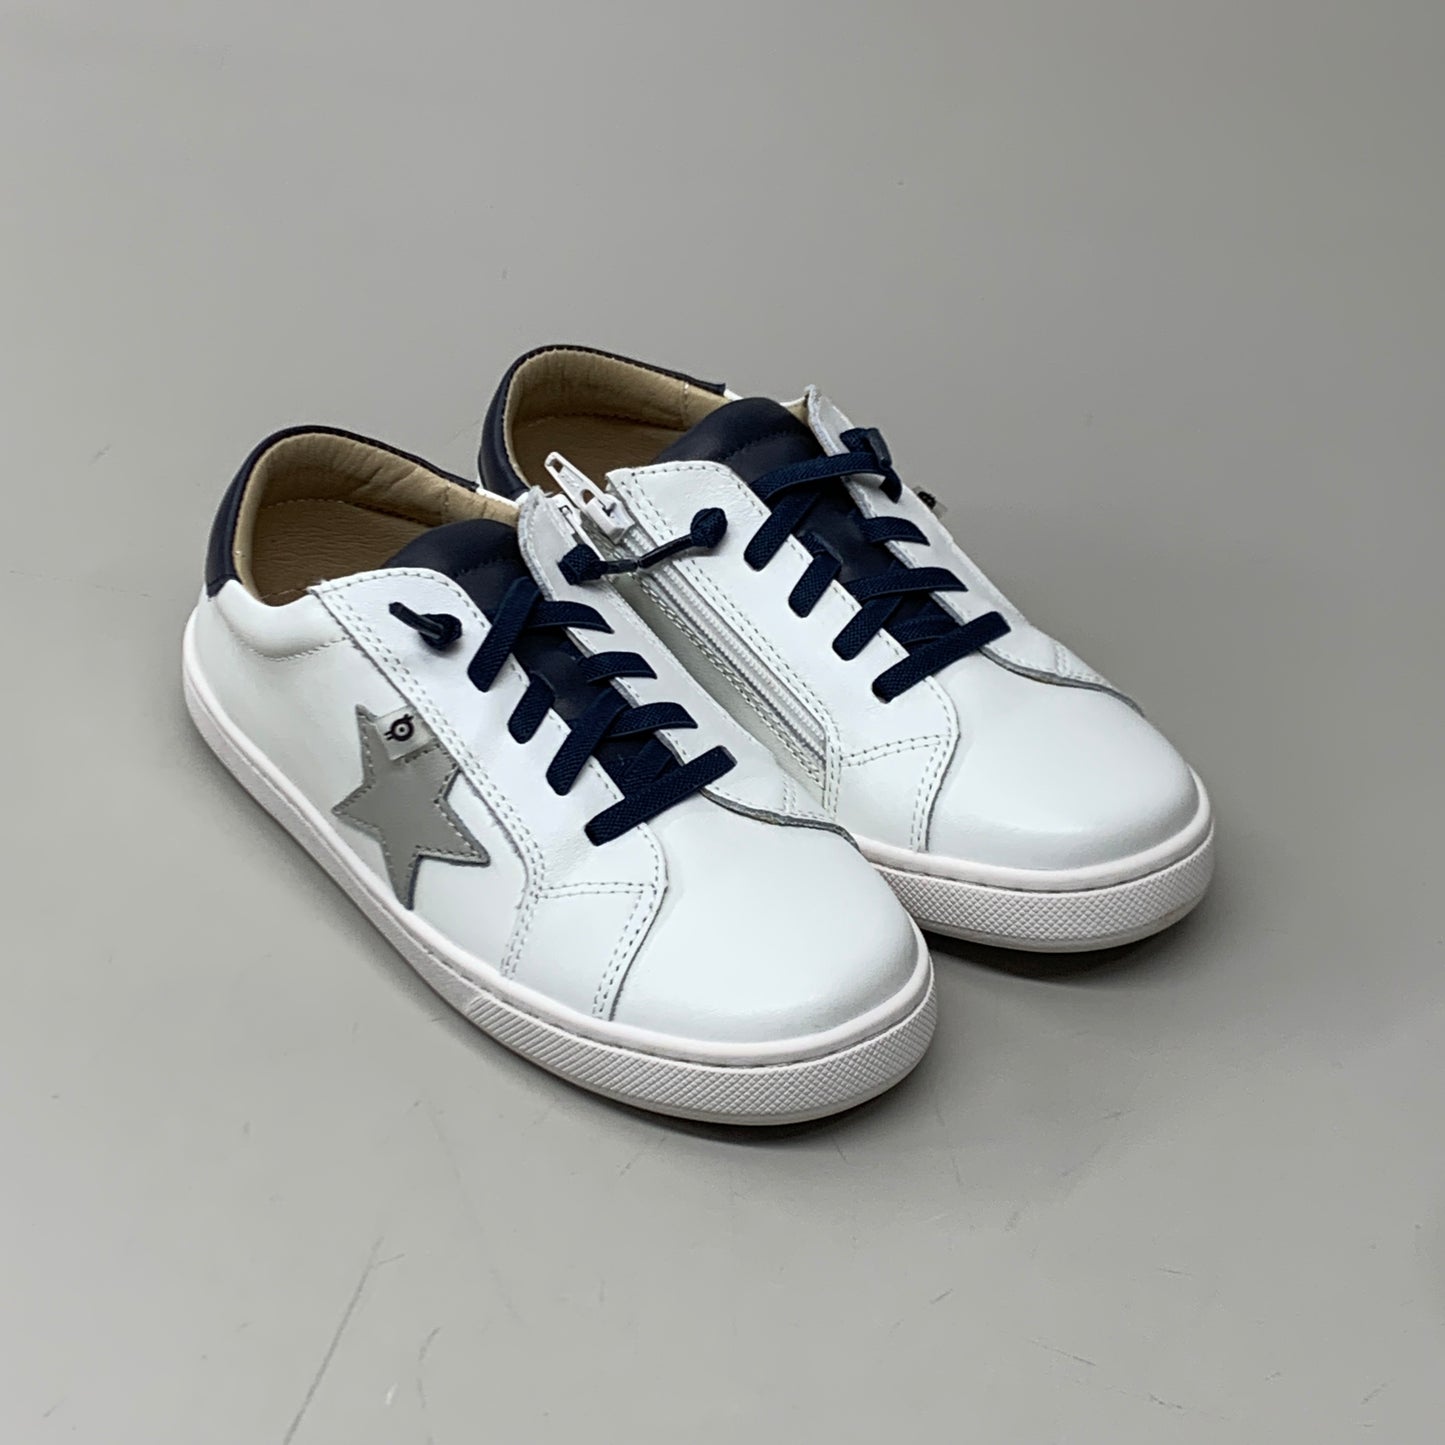 OLD SOLES Comet Runner Sneakers Kid’s Sz 9 EU 25 Snow/Navy/Gris #6149